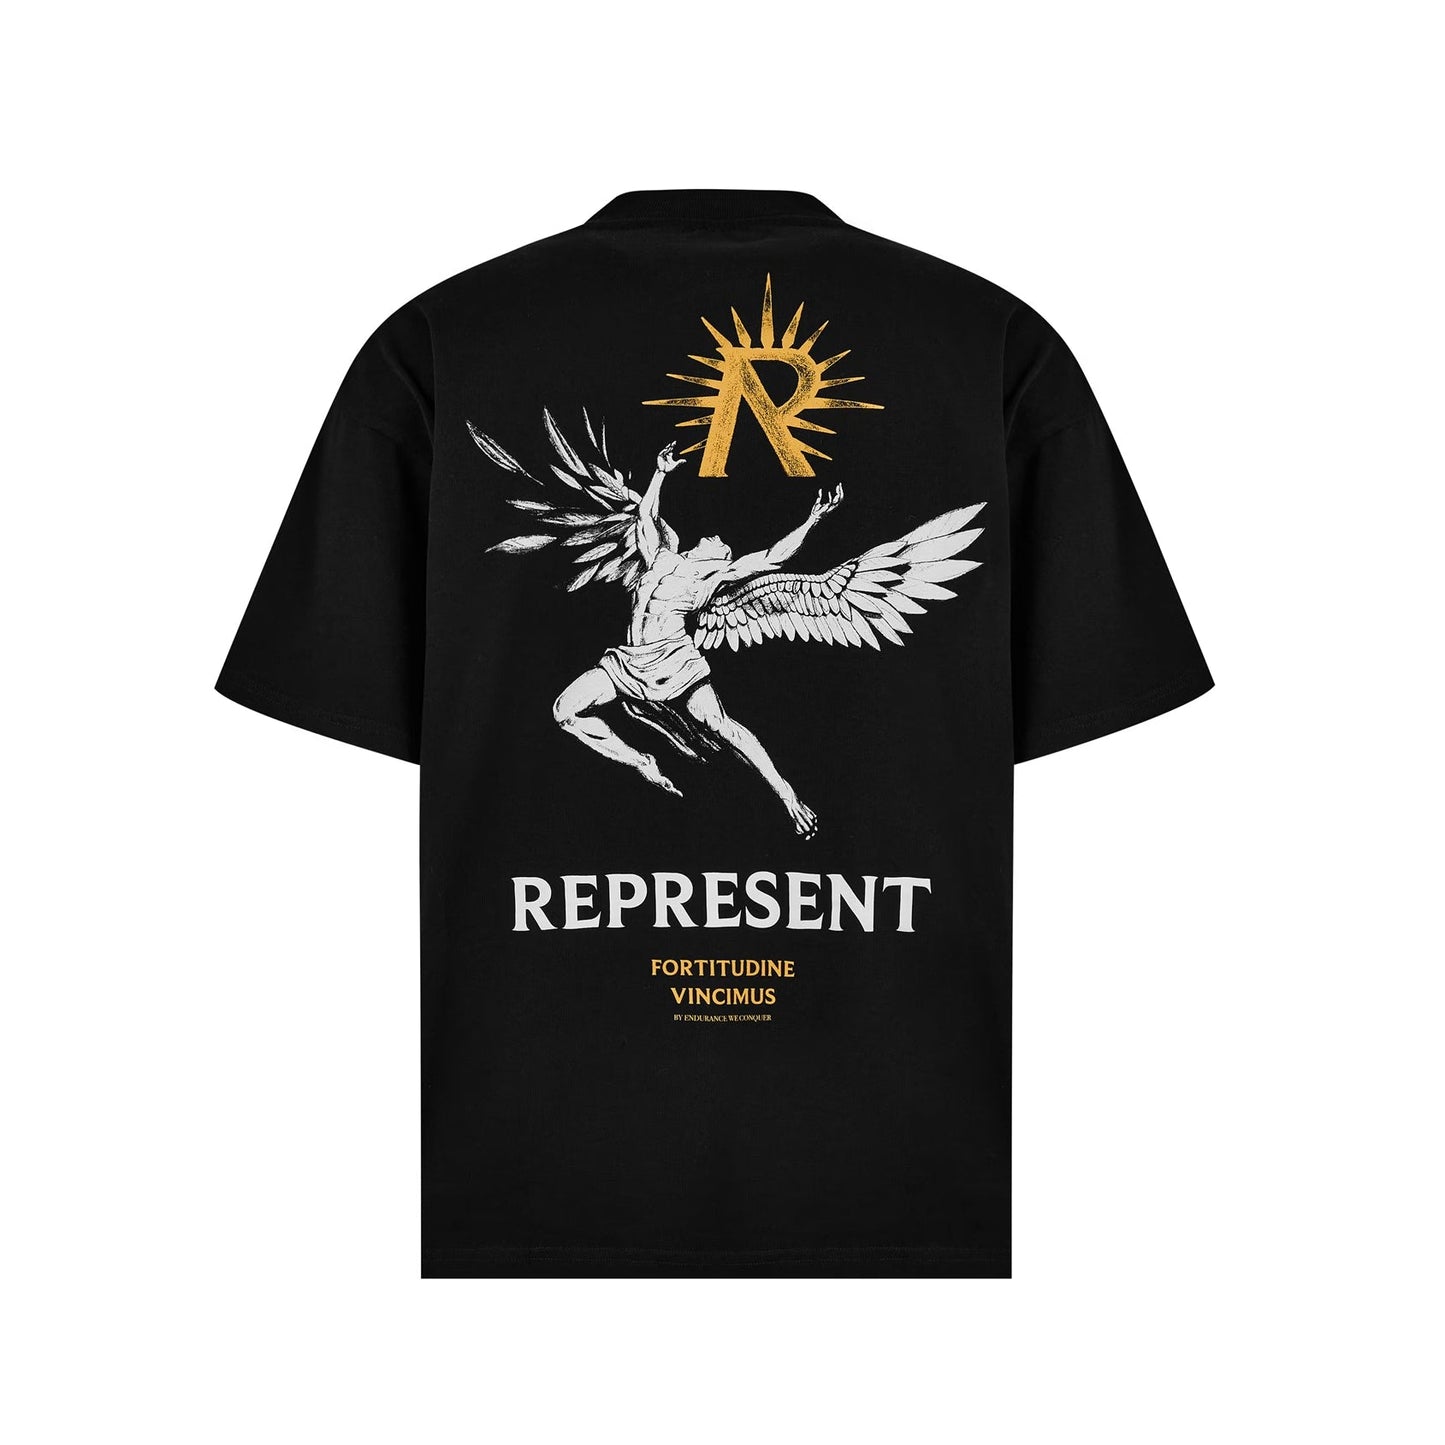 Represent Icarus T-Shirt - 01 Jet Black - Escape Menswear